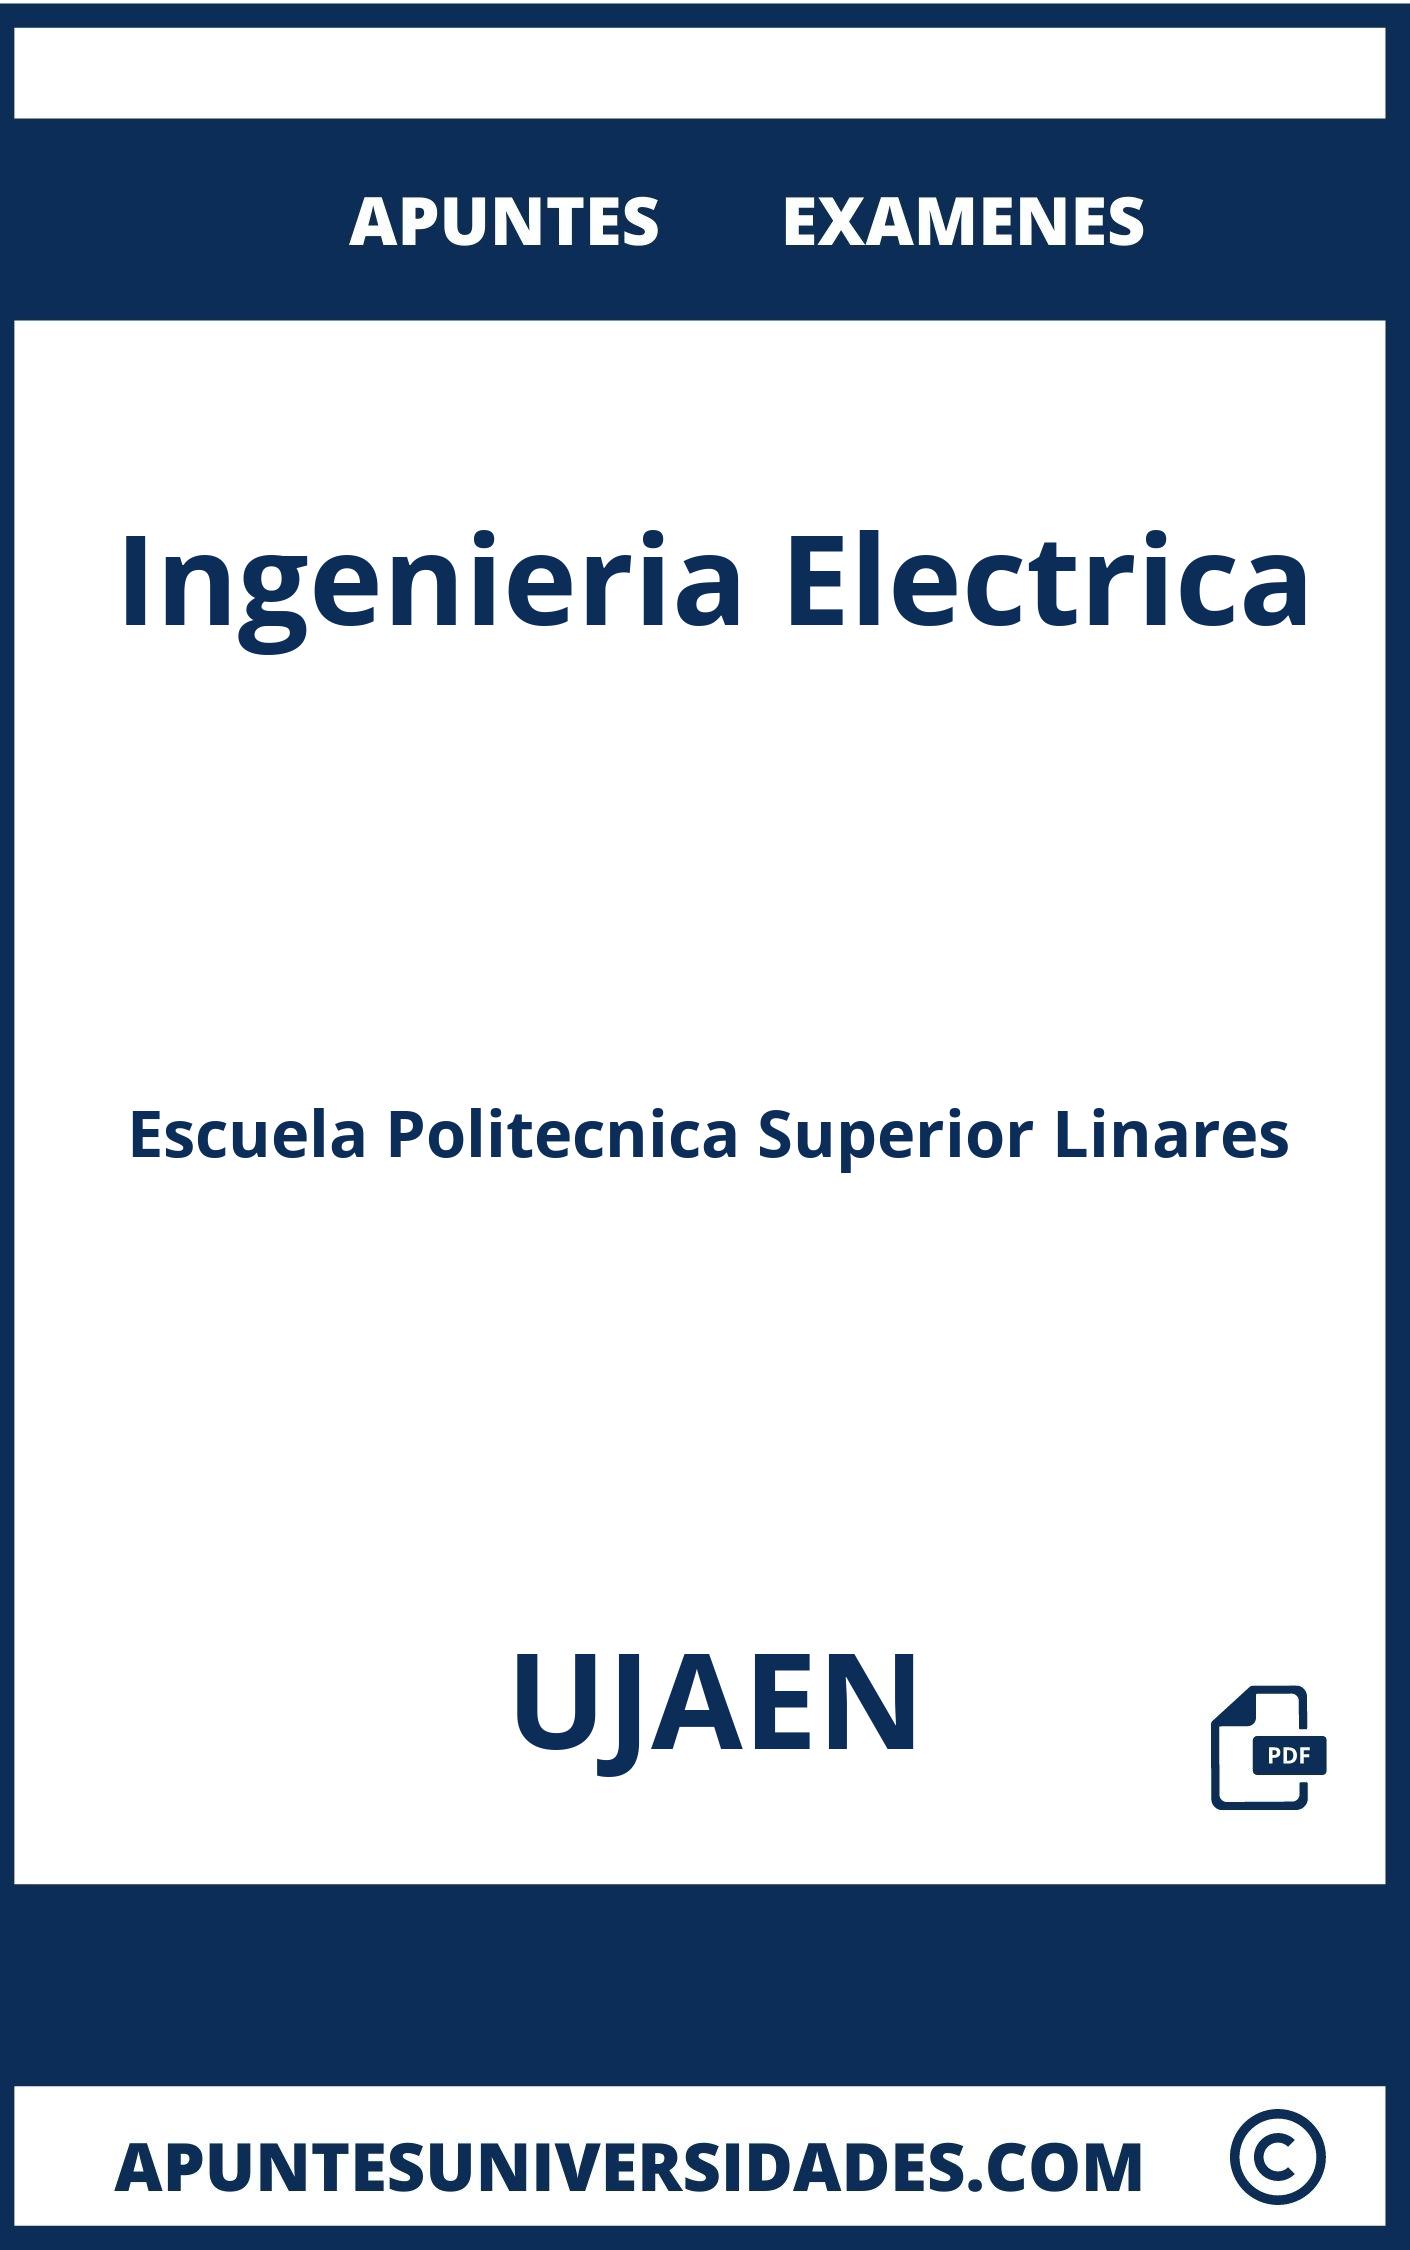 Examenes y Apuntes de Ingenieria Electrica UJAEN